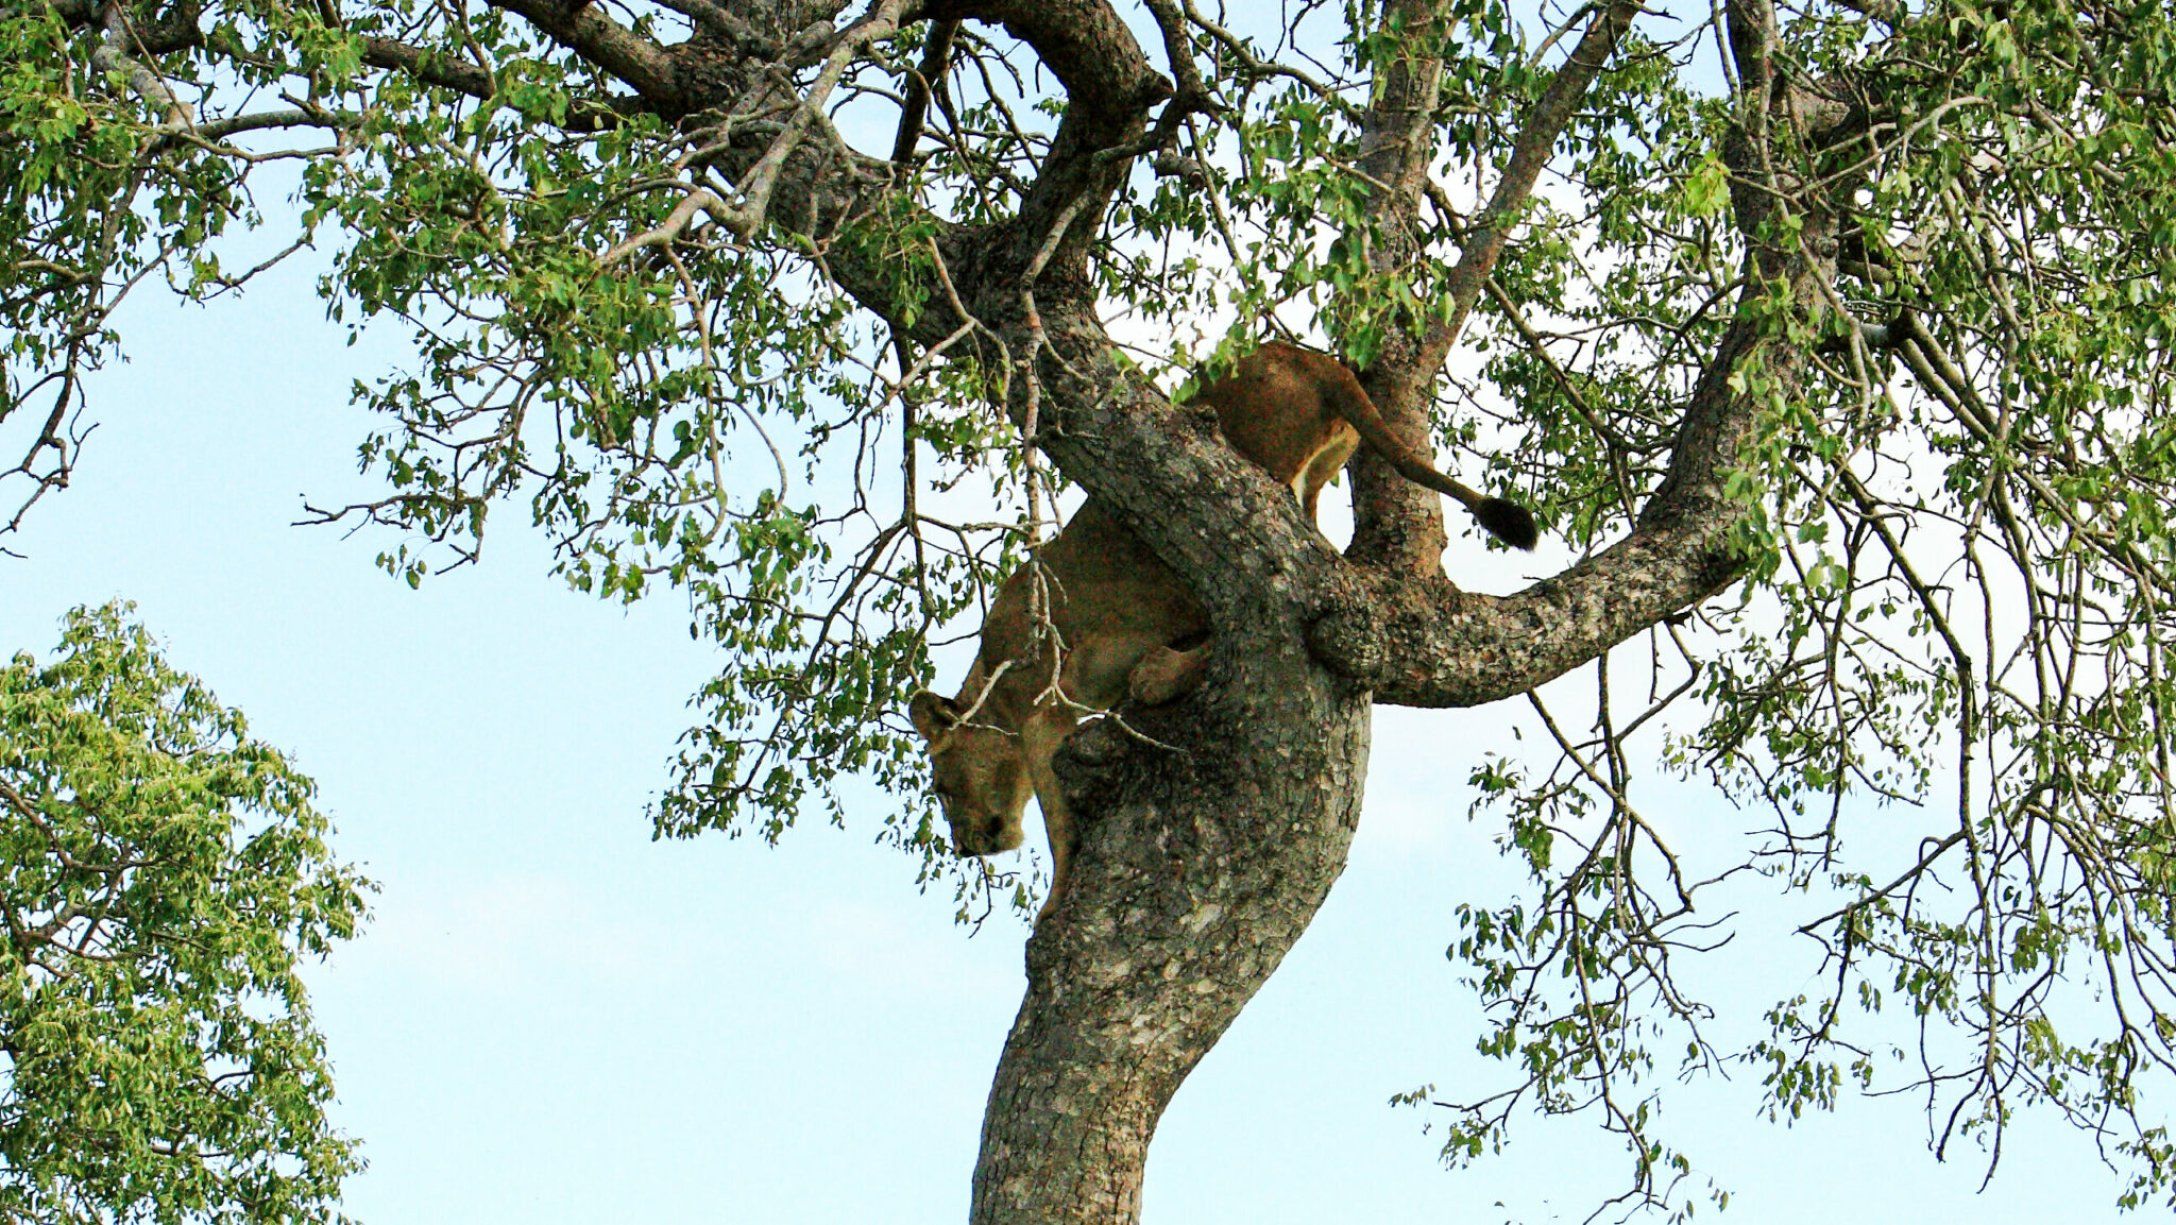 Львица вертикально "застыла" на дереве, спасаясь от 7 львов-самцов